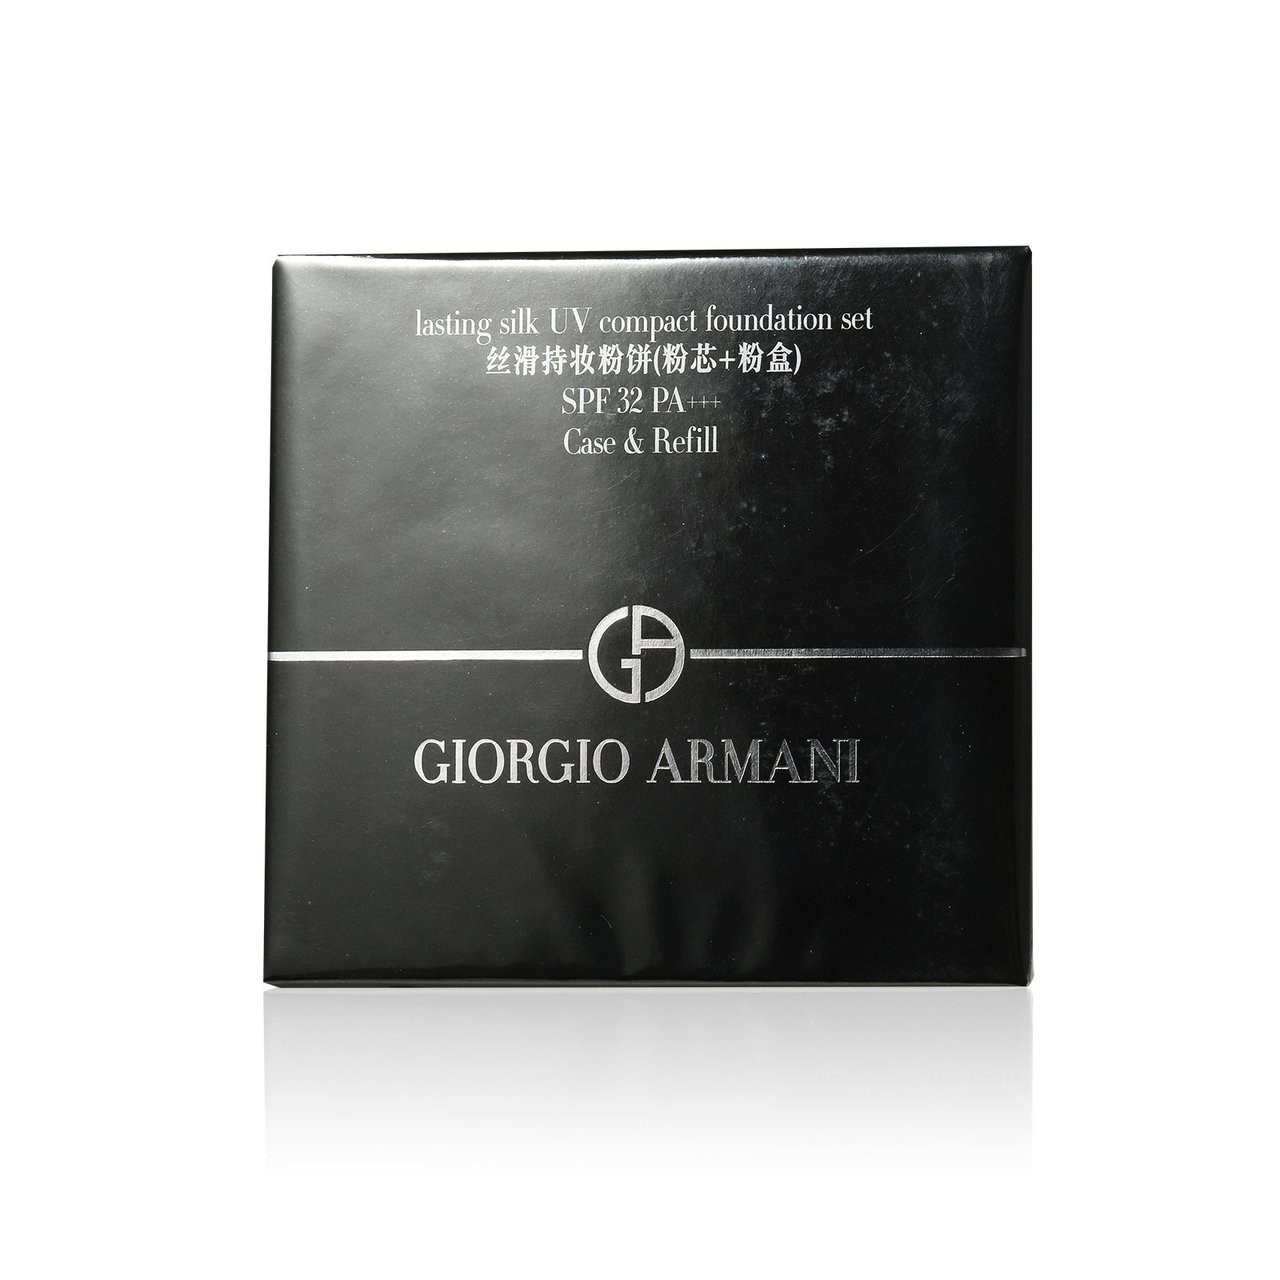 giorgio armani lasting silk uv compact foundation